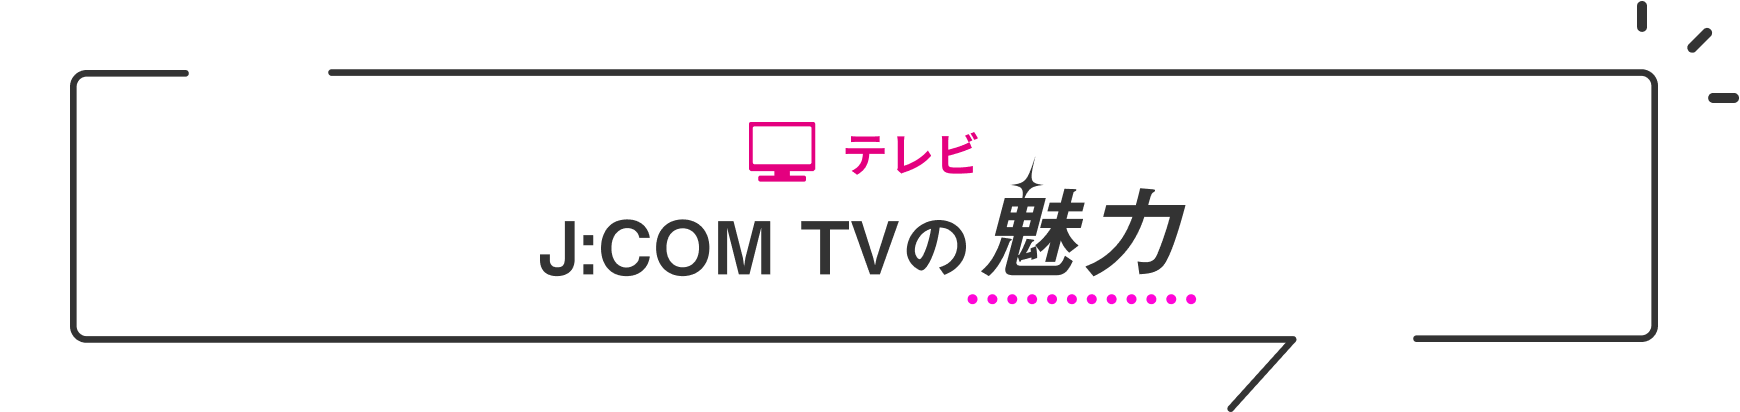 电视的魅力J:COM TV